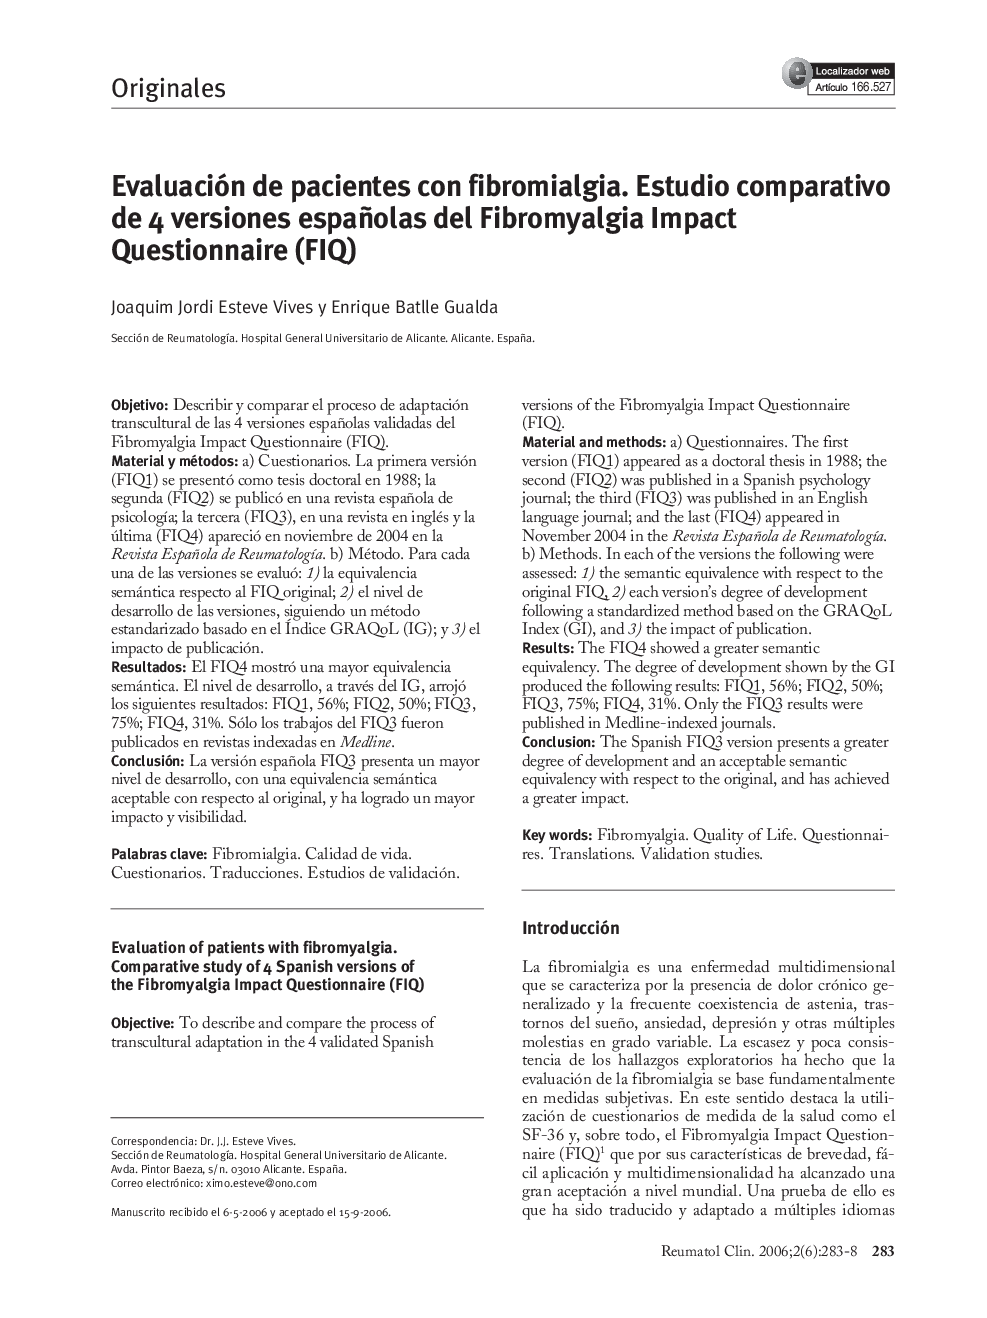 Evaluación de pacientes con fibromialgia. Estudio comparativo de 4 versiones españolas del Fibromyalgia Impact Questionnaire (FIQ)